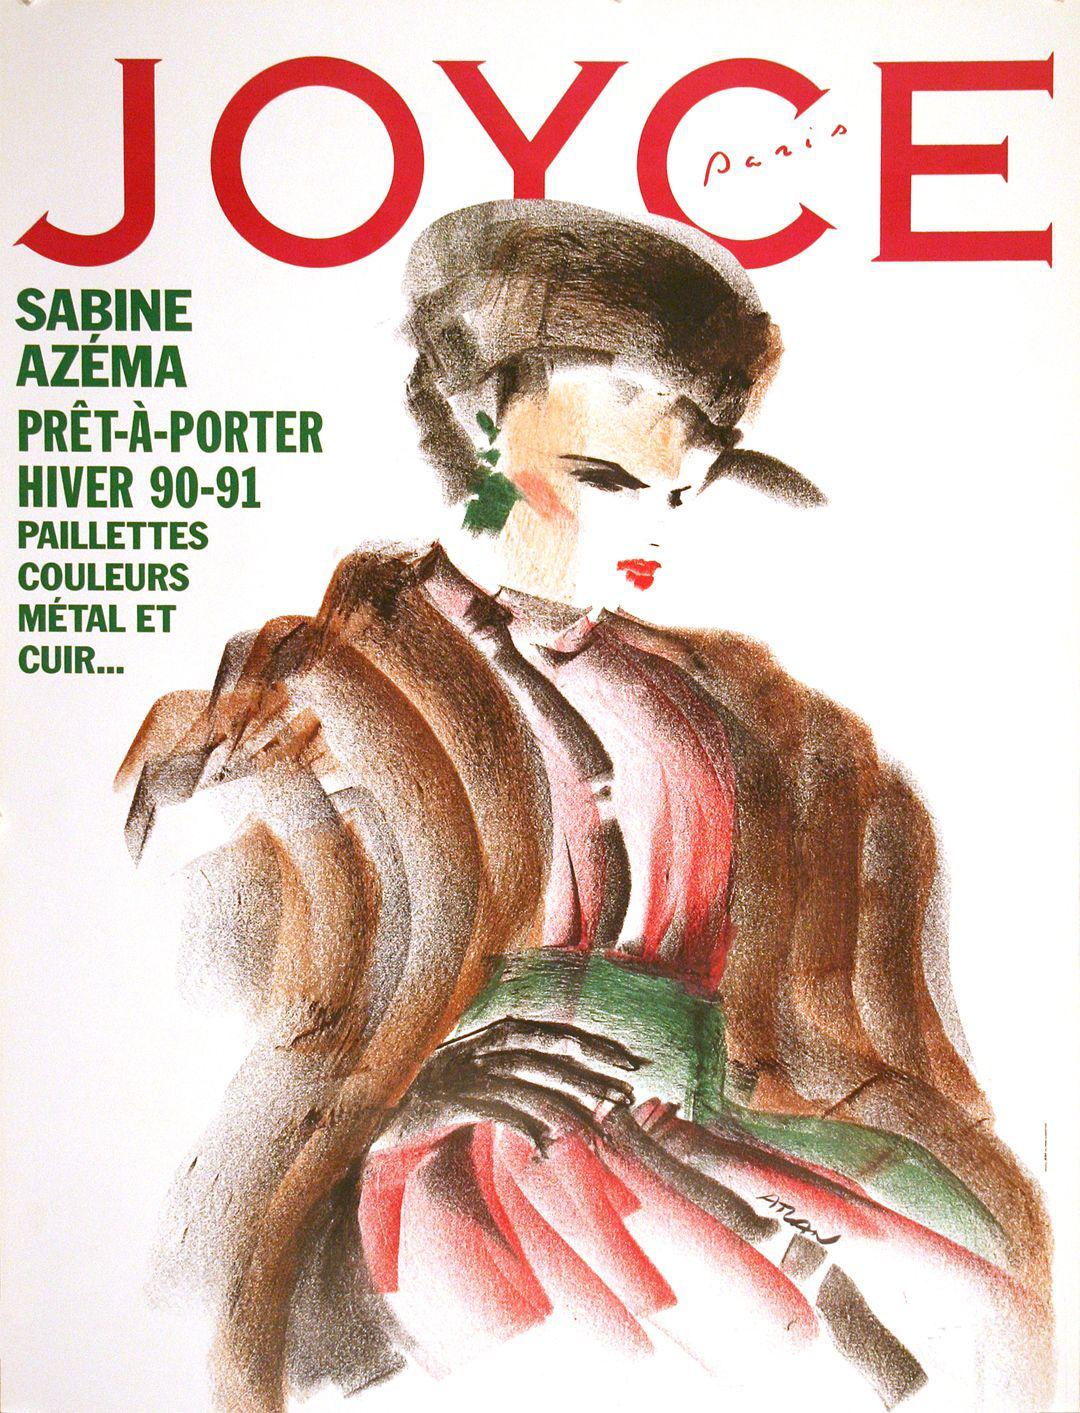 Joyce Original French Fashion Poster by Aslan 1990